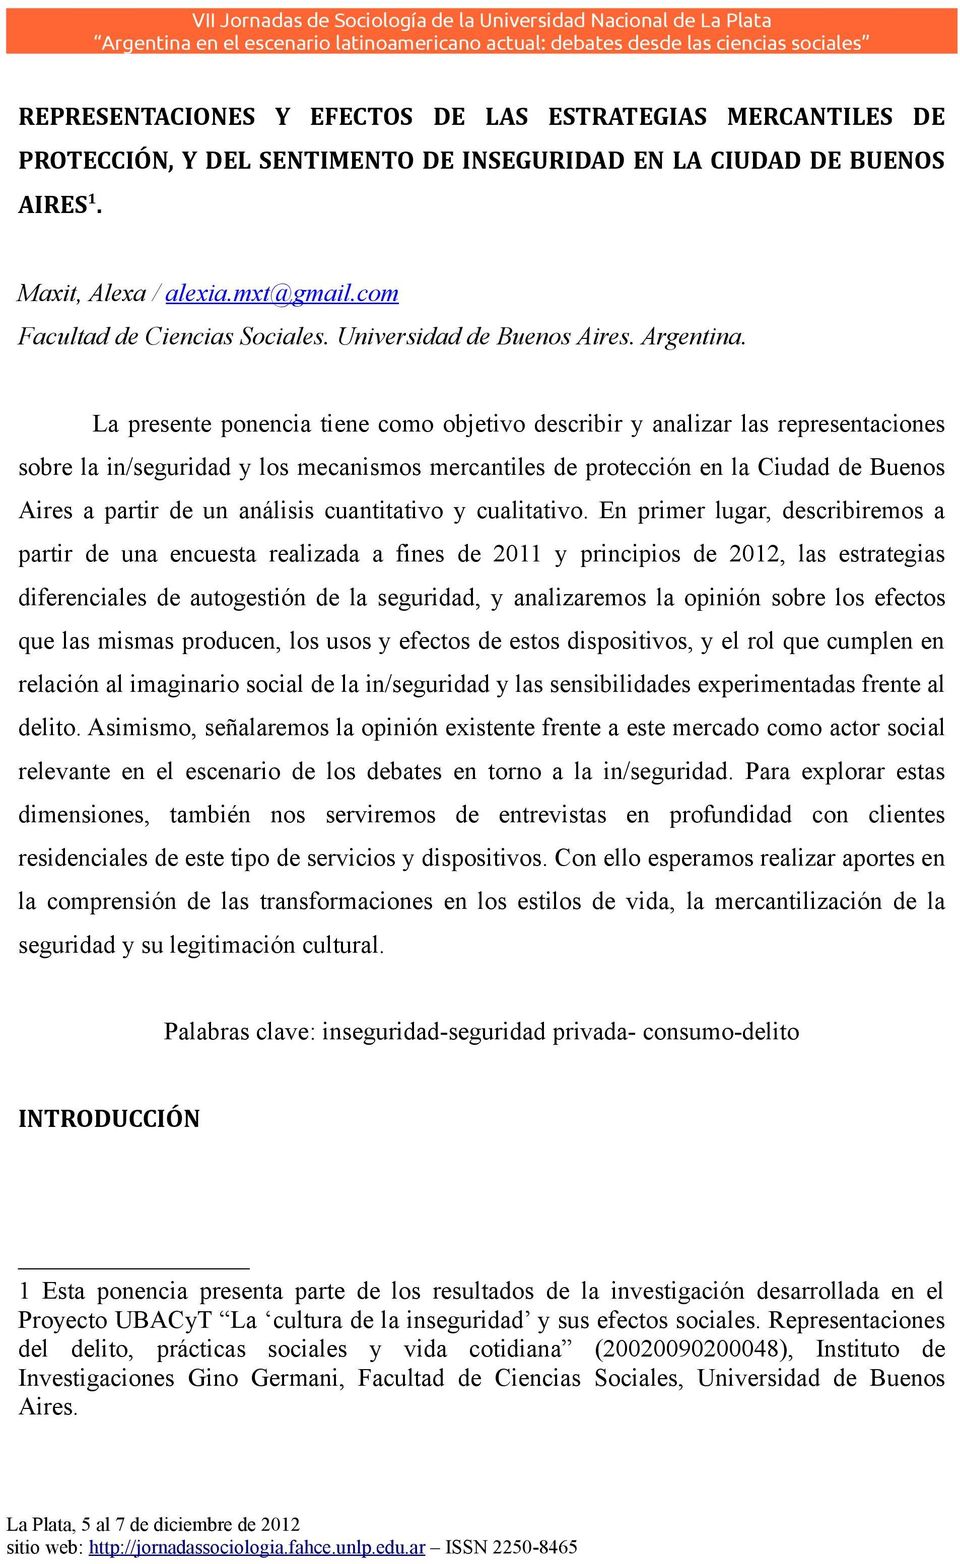 La presente ponencia tiene como objetivo describir y analizar las representaciones sobre la in/seguridad y los mecanismos mercantiles de protección en la Ciudad de Buenos Aires a partir de un